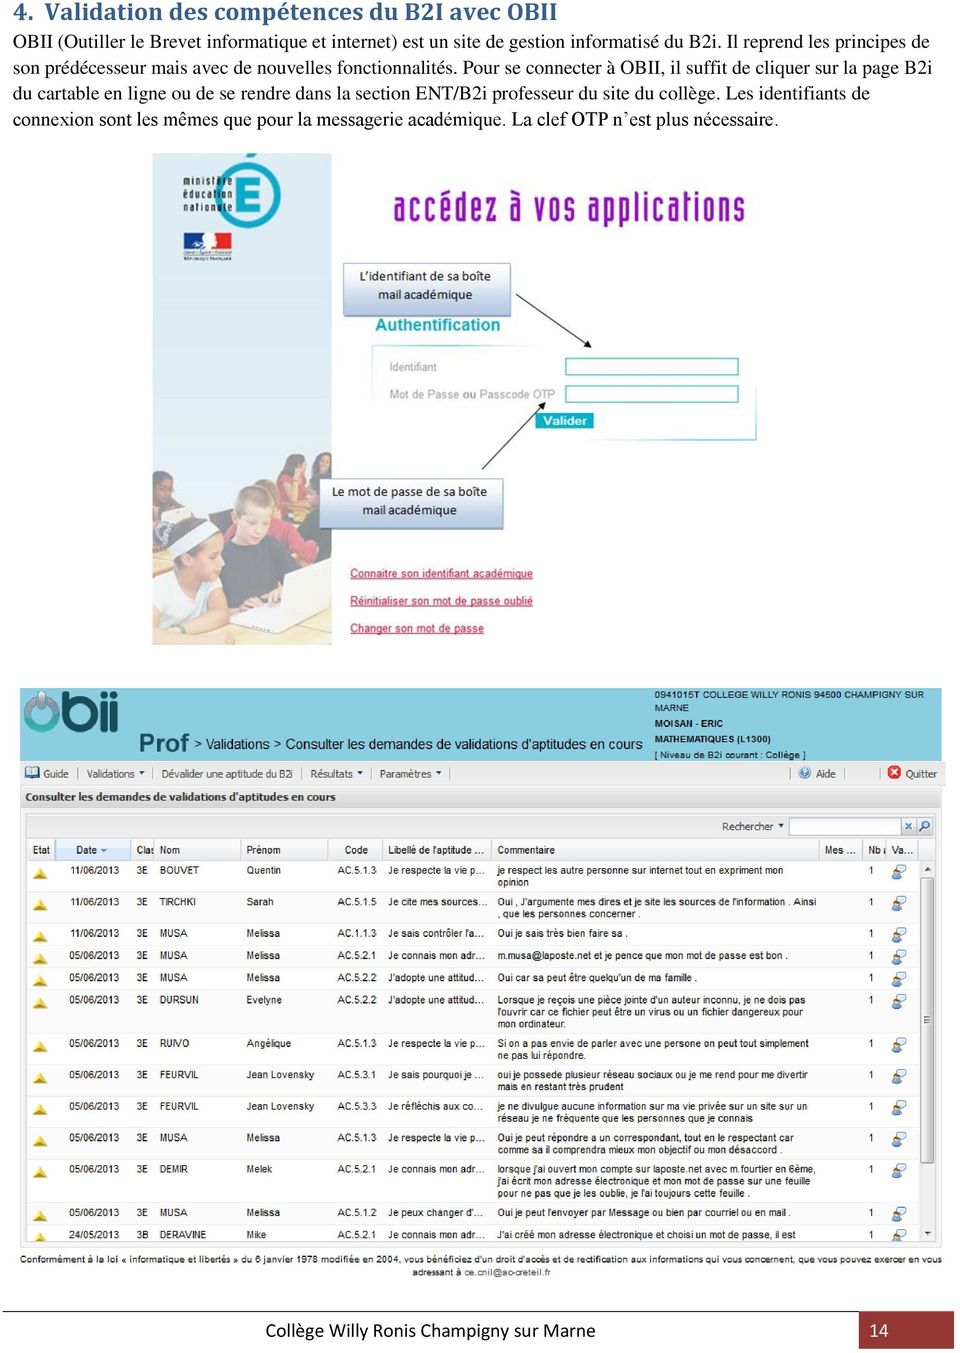 Pour se connecter à OBII, il suffit de cliquer sur la page B2i du cartable en ligne ou de se rendre dans la section ENT/B2i professeur